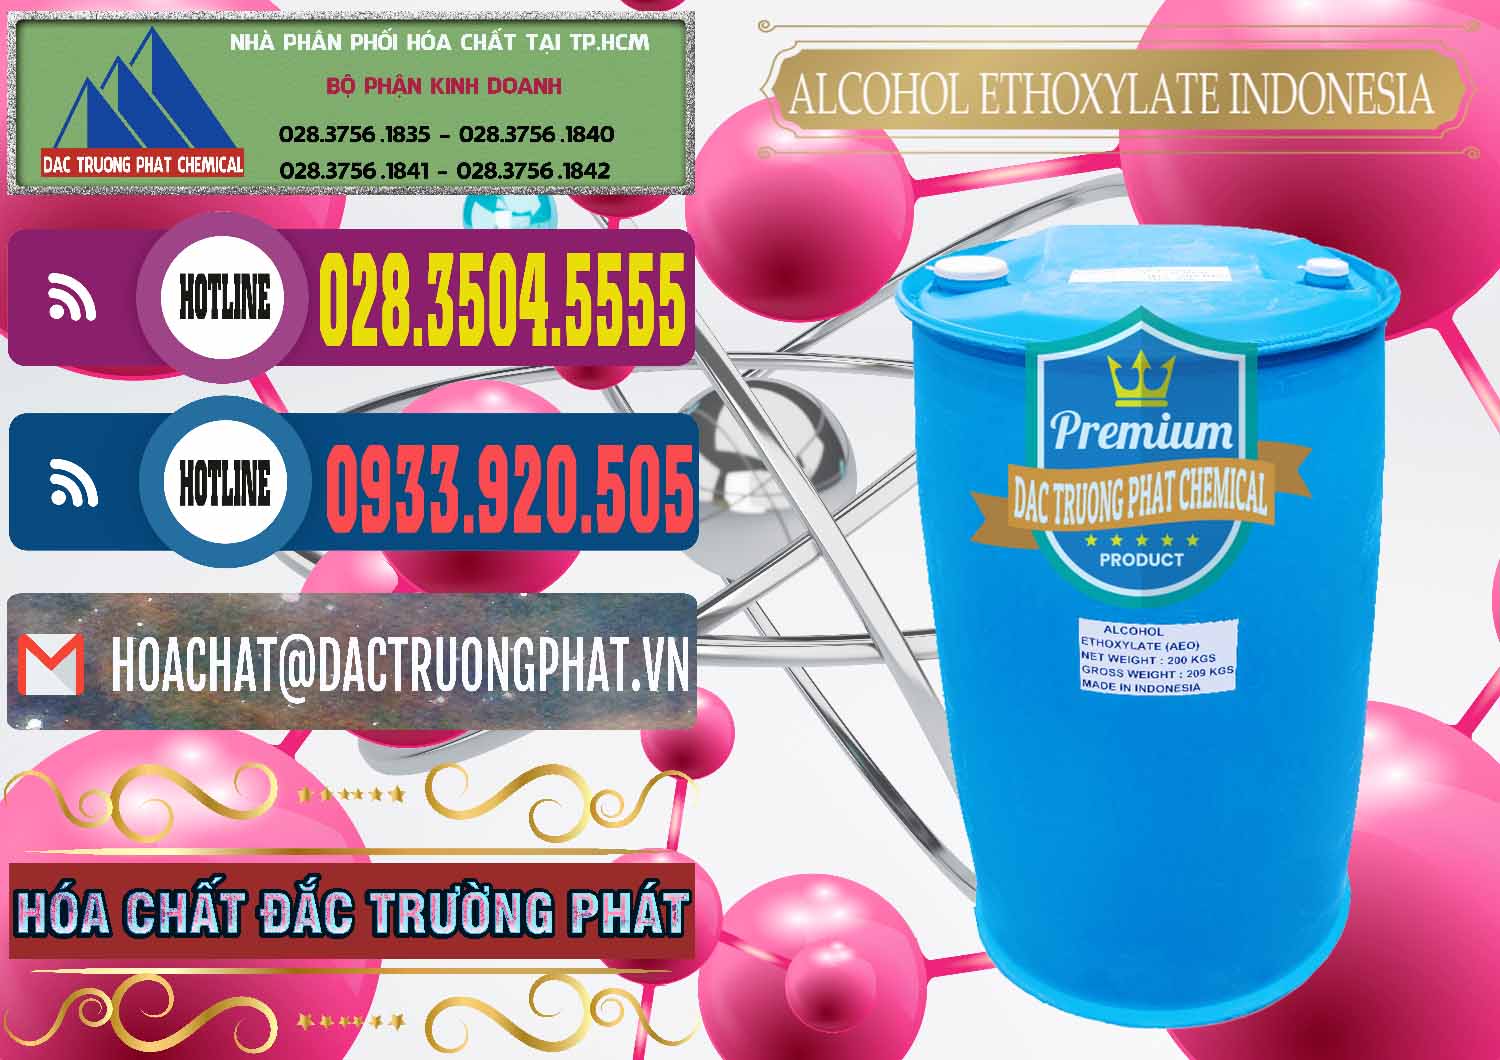 Cty cung cấp & bán Alcohol Ethoxylate Indonesia - 0308 - Cty nhập khẩu & cung cấp hóa chất tại TP.HCM - muabanhoachat.com.vn